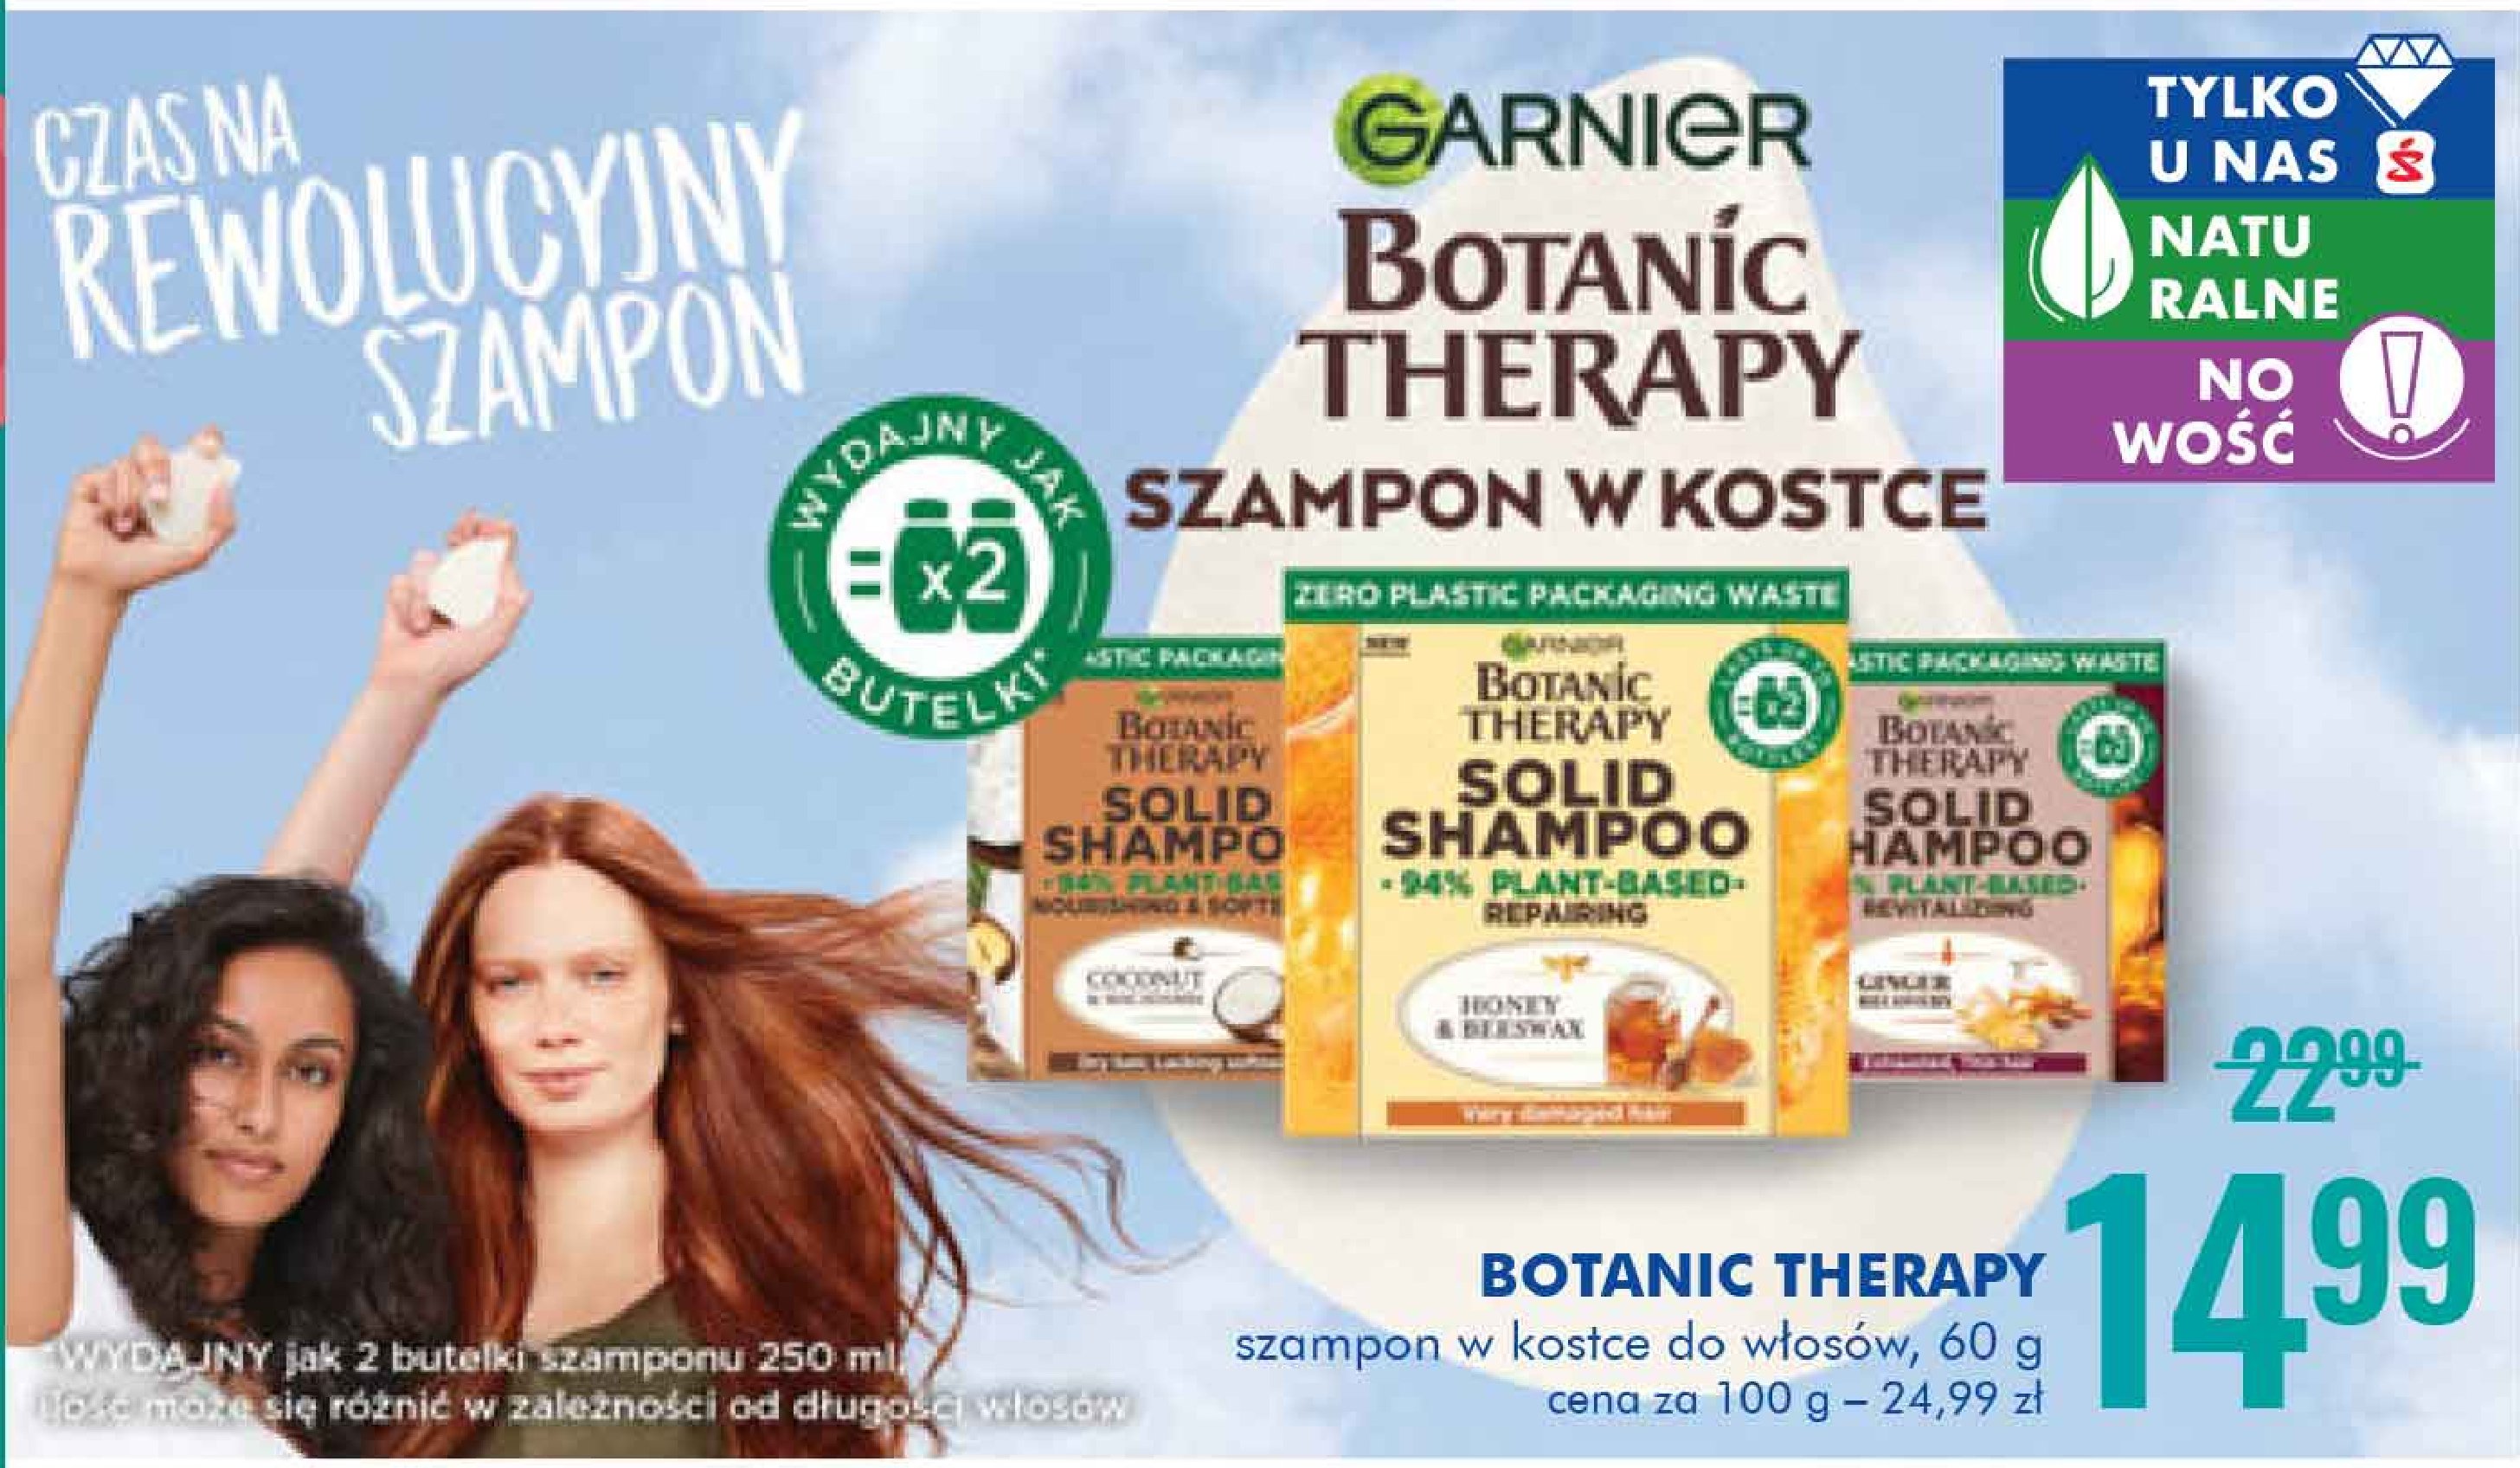 Szampon w kostce honey & bestwax Garnier botanic therapy promocja